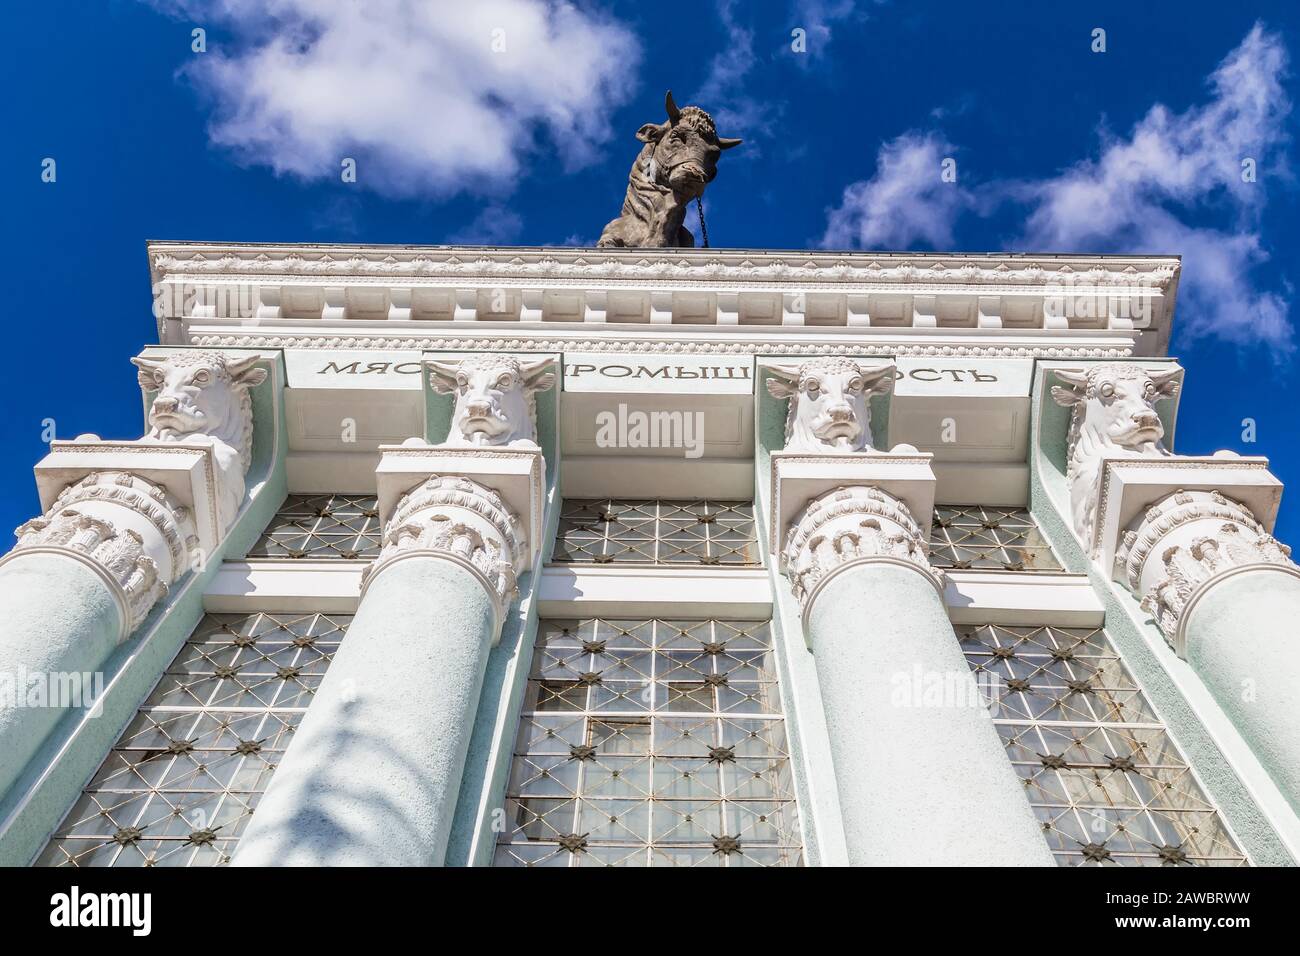 MOSKAU, RUSSLAND - am 25. MÄRZ 2017: Ein Fragment einer Fassade des Pavillons der Fleischindustrie auf der Ausstellung der Errungenschaften der Volkswirtschaft Stockfoto